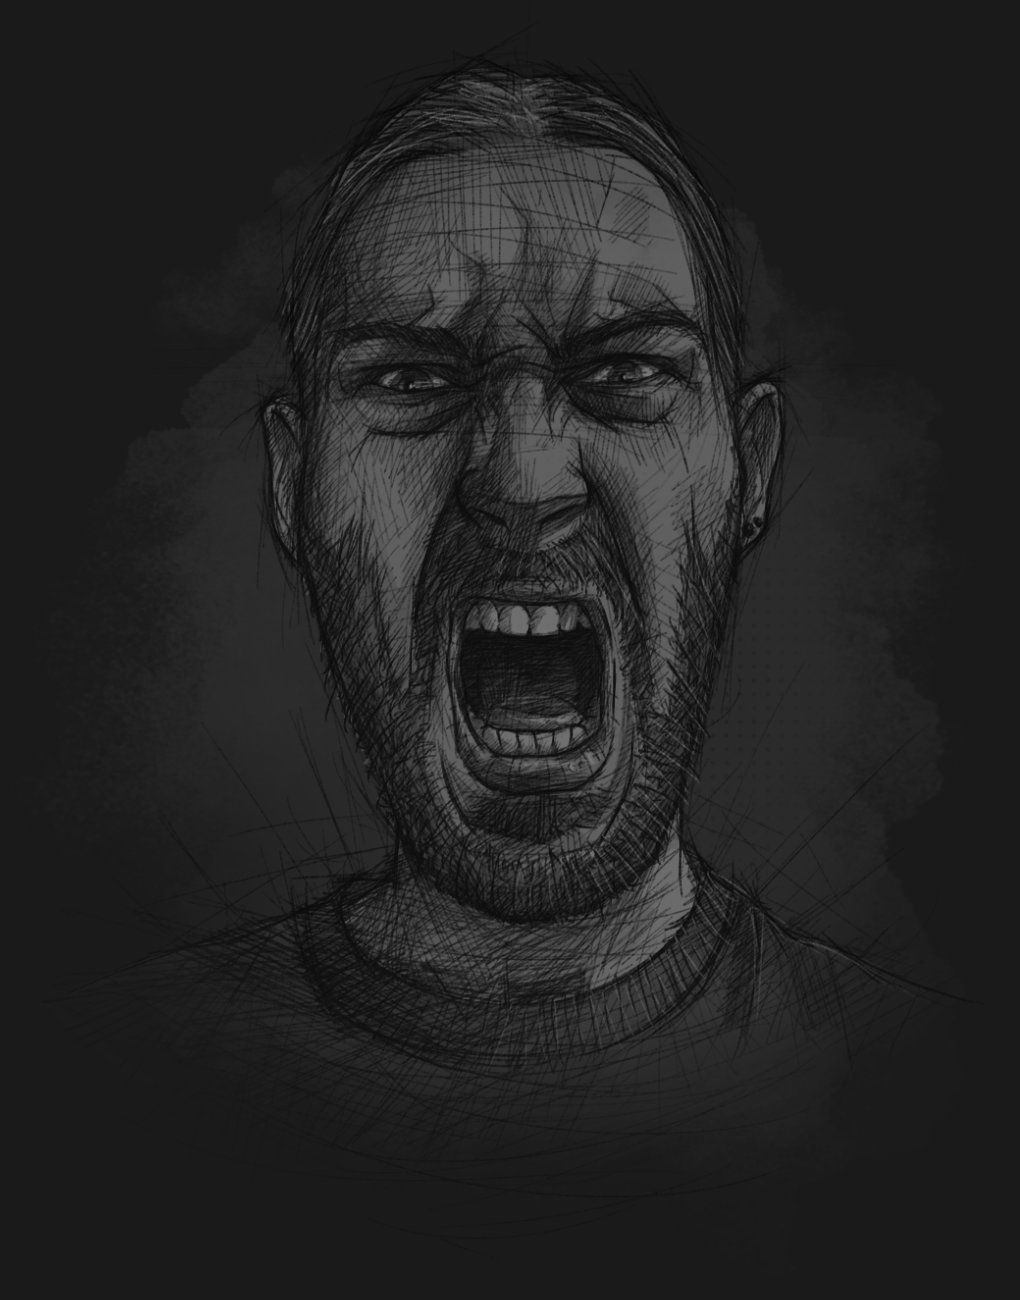 Ein skizzenhaft illustriertes Selbstportrait, das den Illustrator mit Grimasse mit einem weit aufgerissenen Mund zeigt